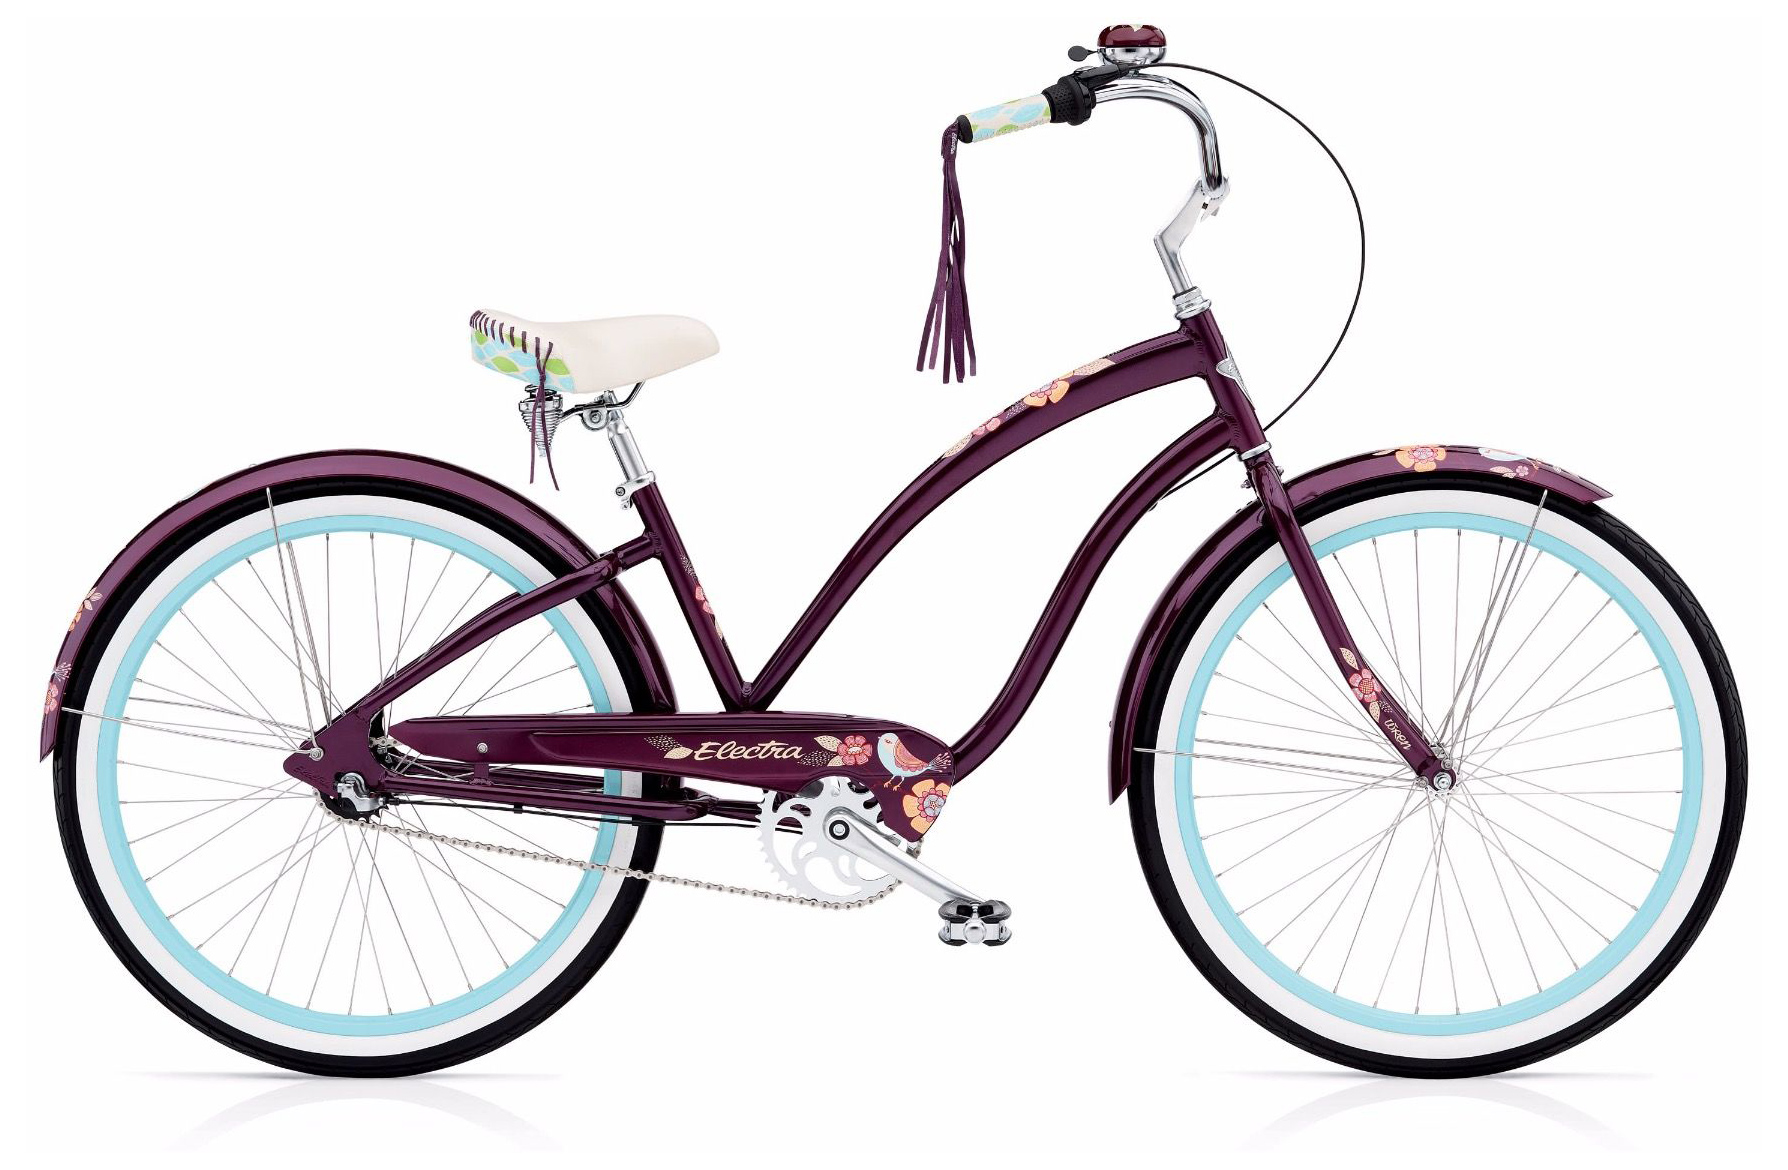  Отзывы о Женском велосипеде Electra Wren 3i 2019